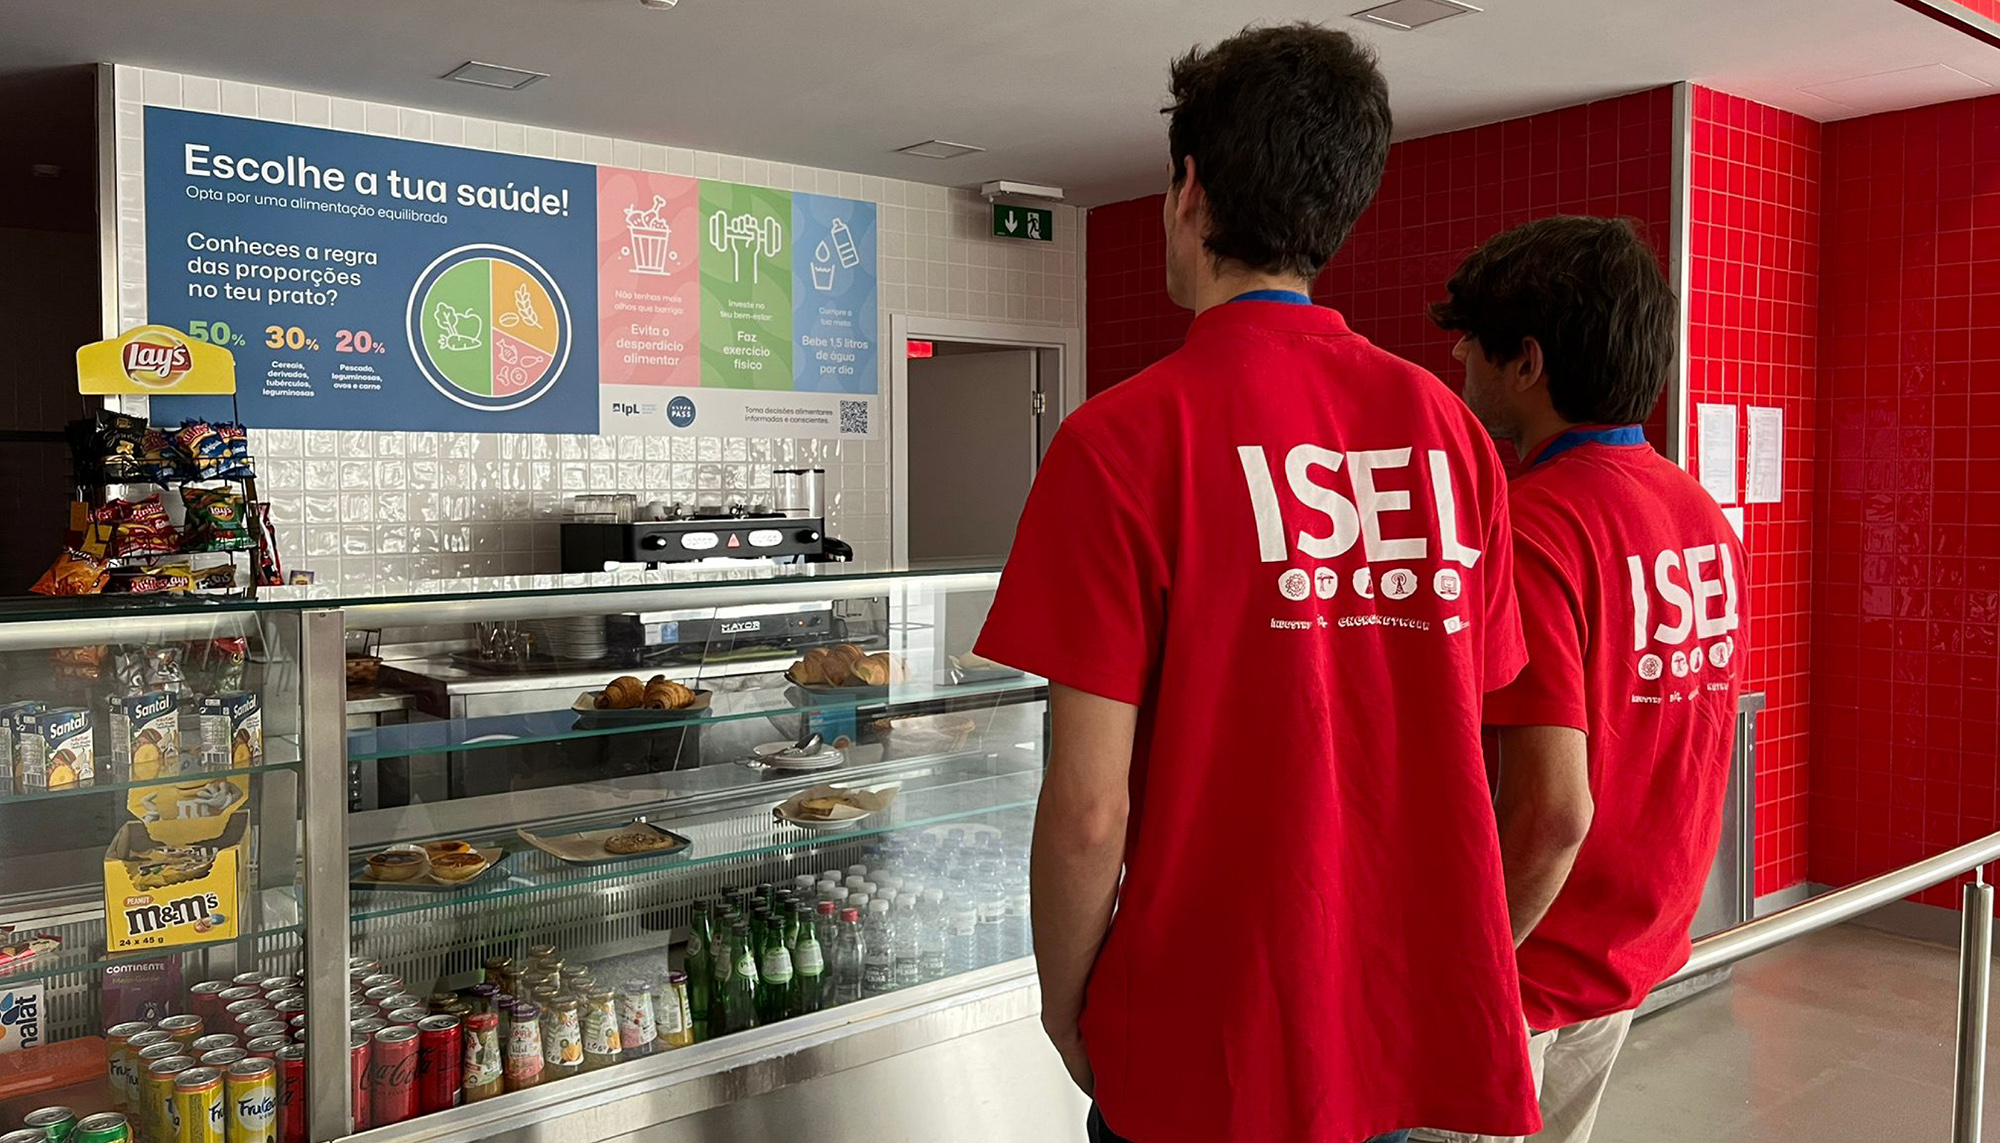 PASS-IPL desenvolve painéis informativos para os espaços de alimentação do IPL